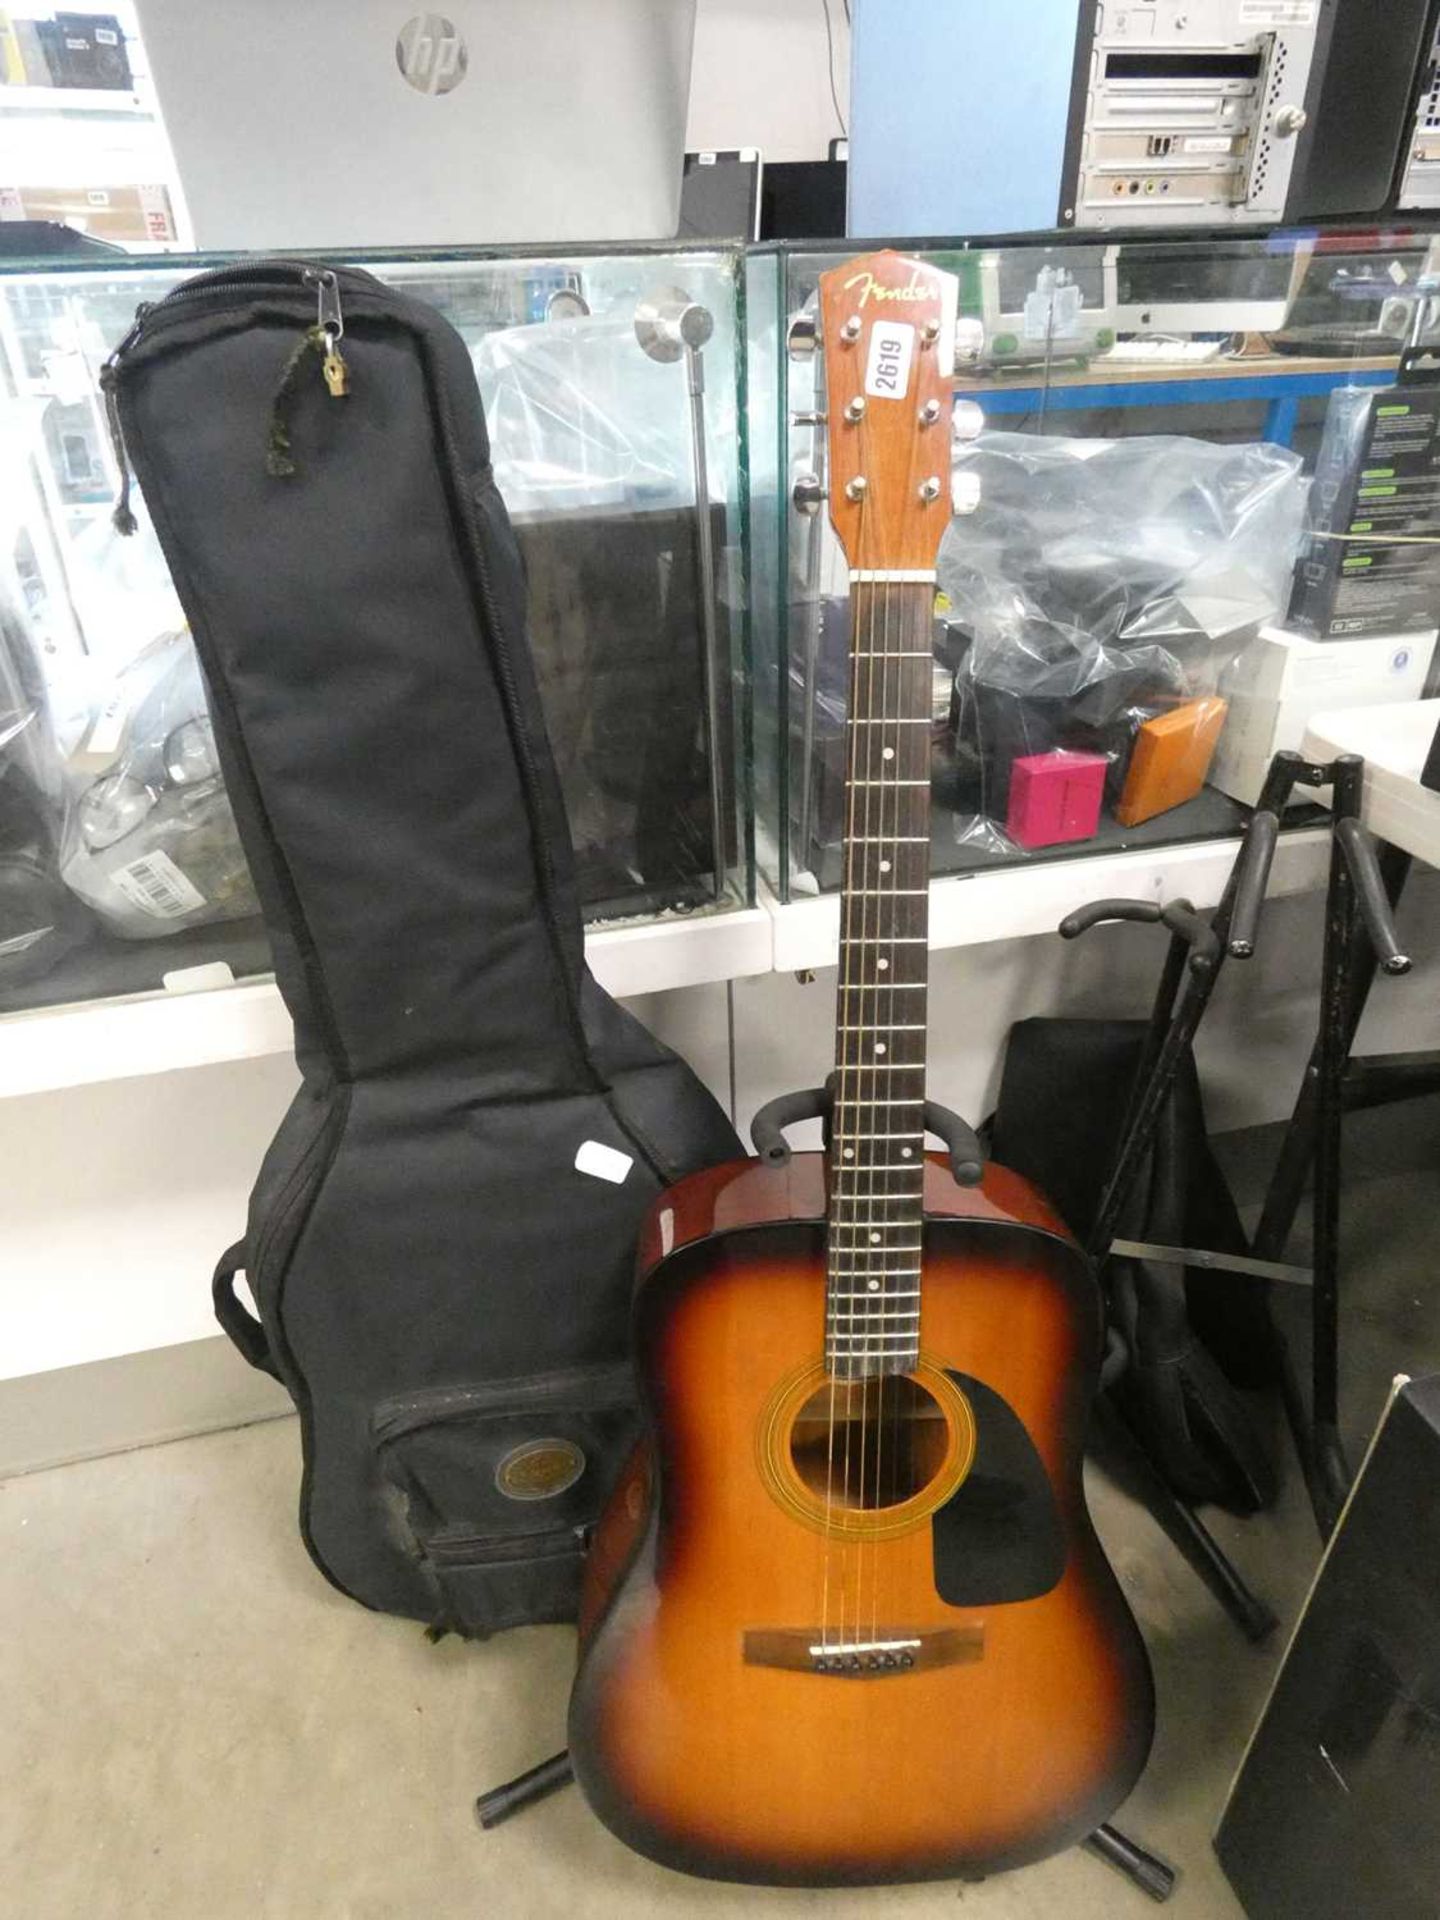 Fender 6 string acoustic guitar with gig bag